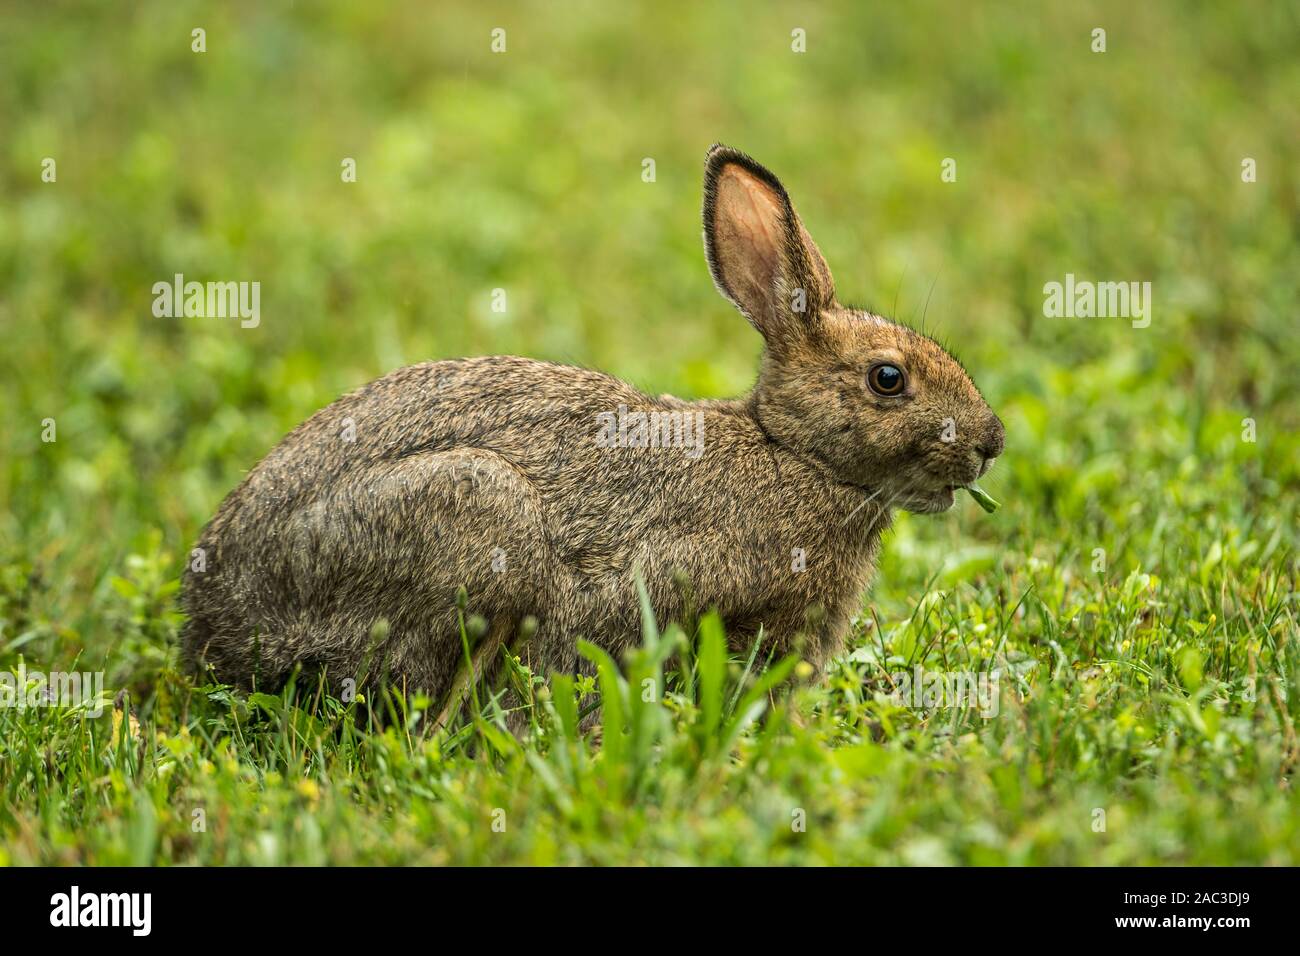 Ein Snowshoe Hare in Es ist Sommer Färbung auf grünem Gras. Stockfoto